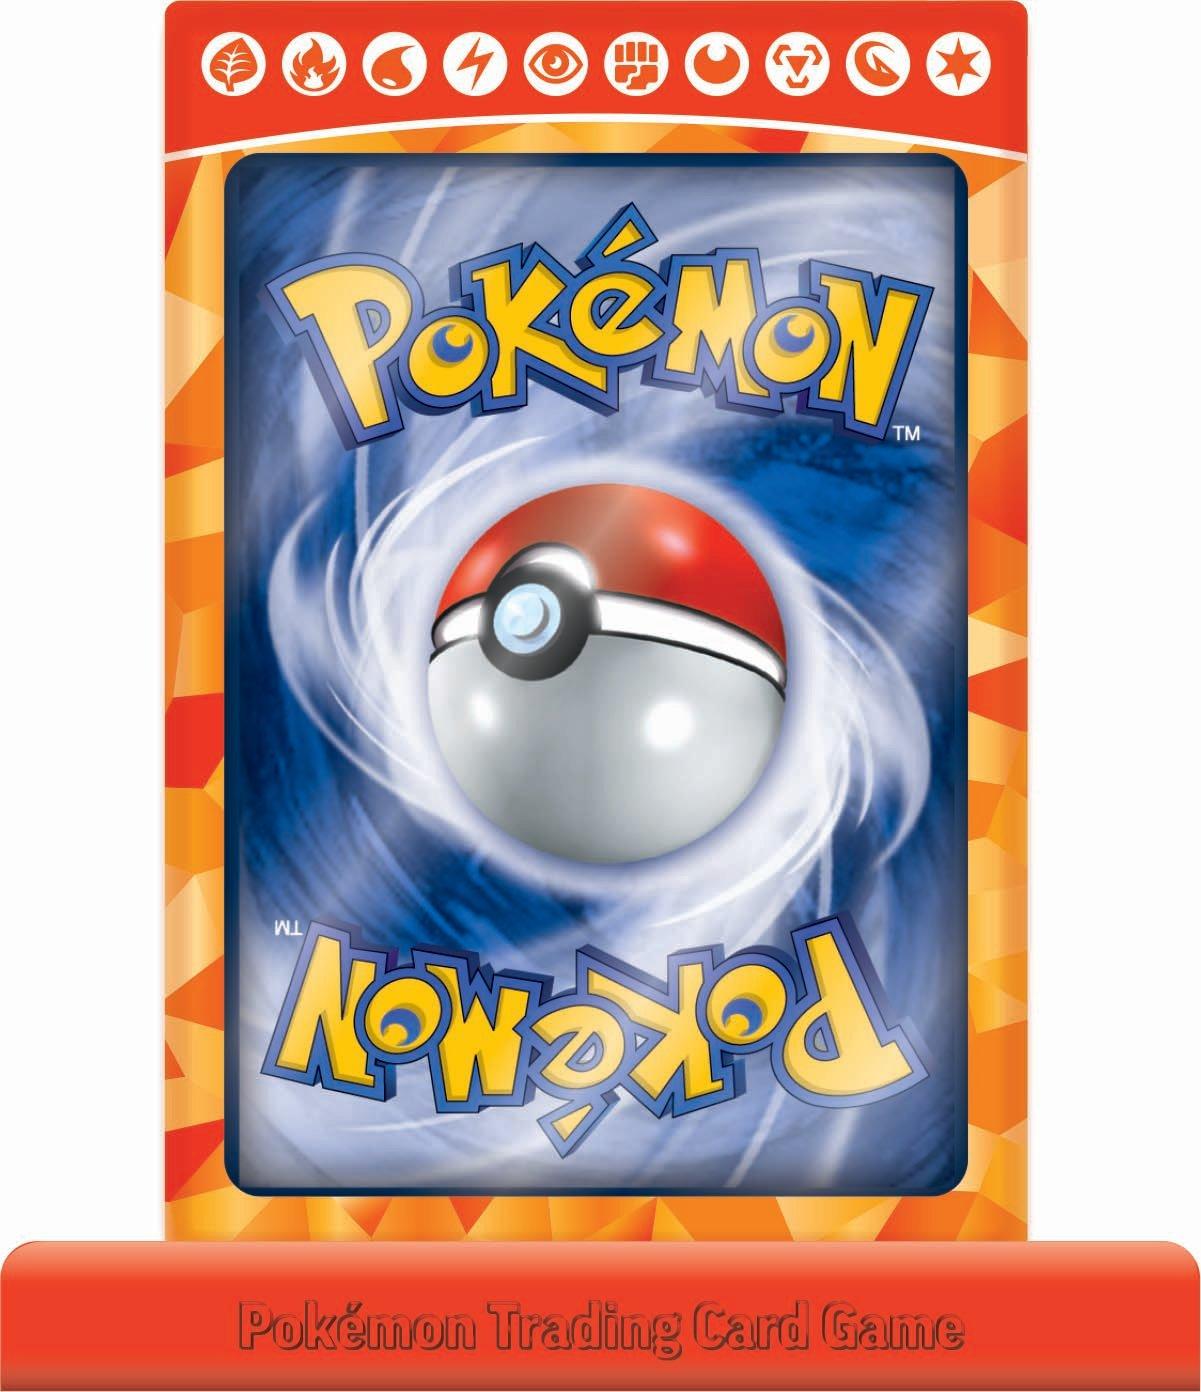 Busca: Charizard ex, Busca de cards, produtos e preços de Pokemon